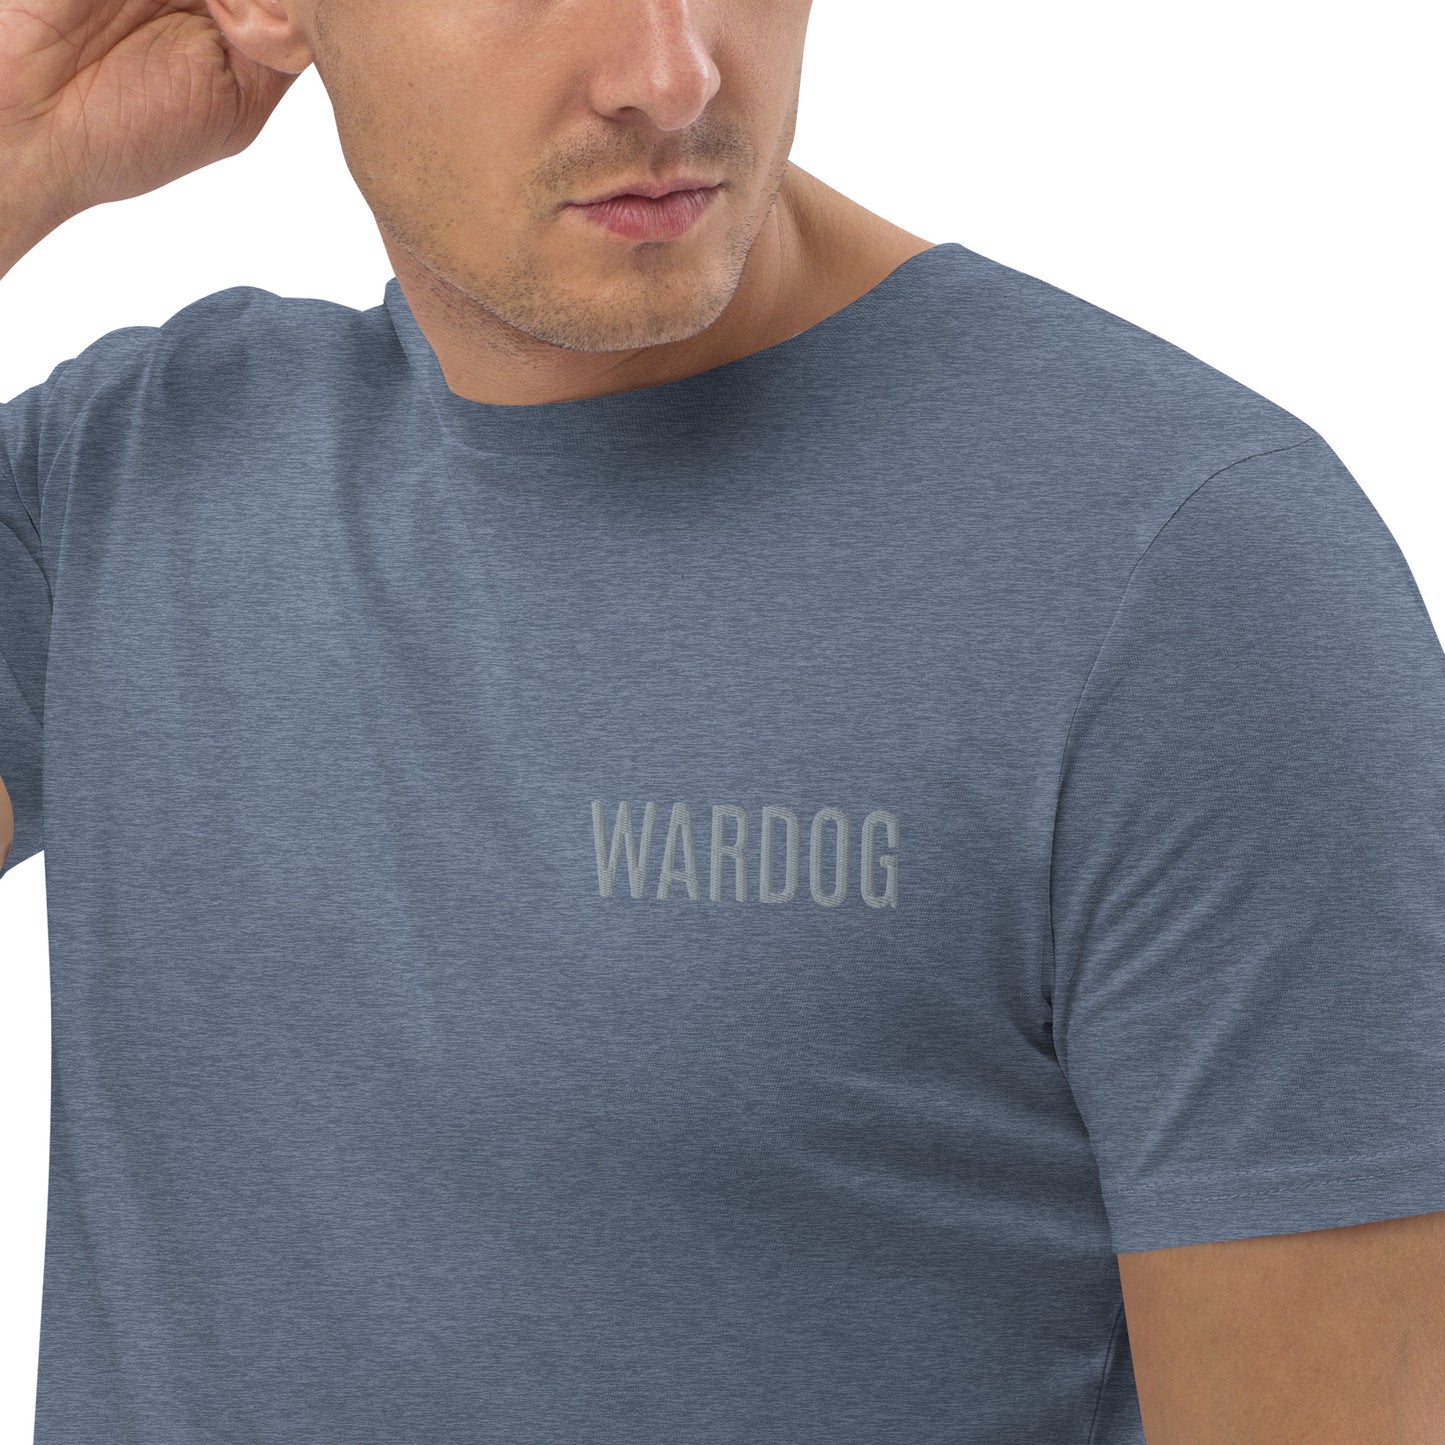 WARDOG organic cotton t-shirt